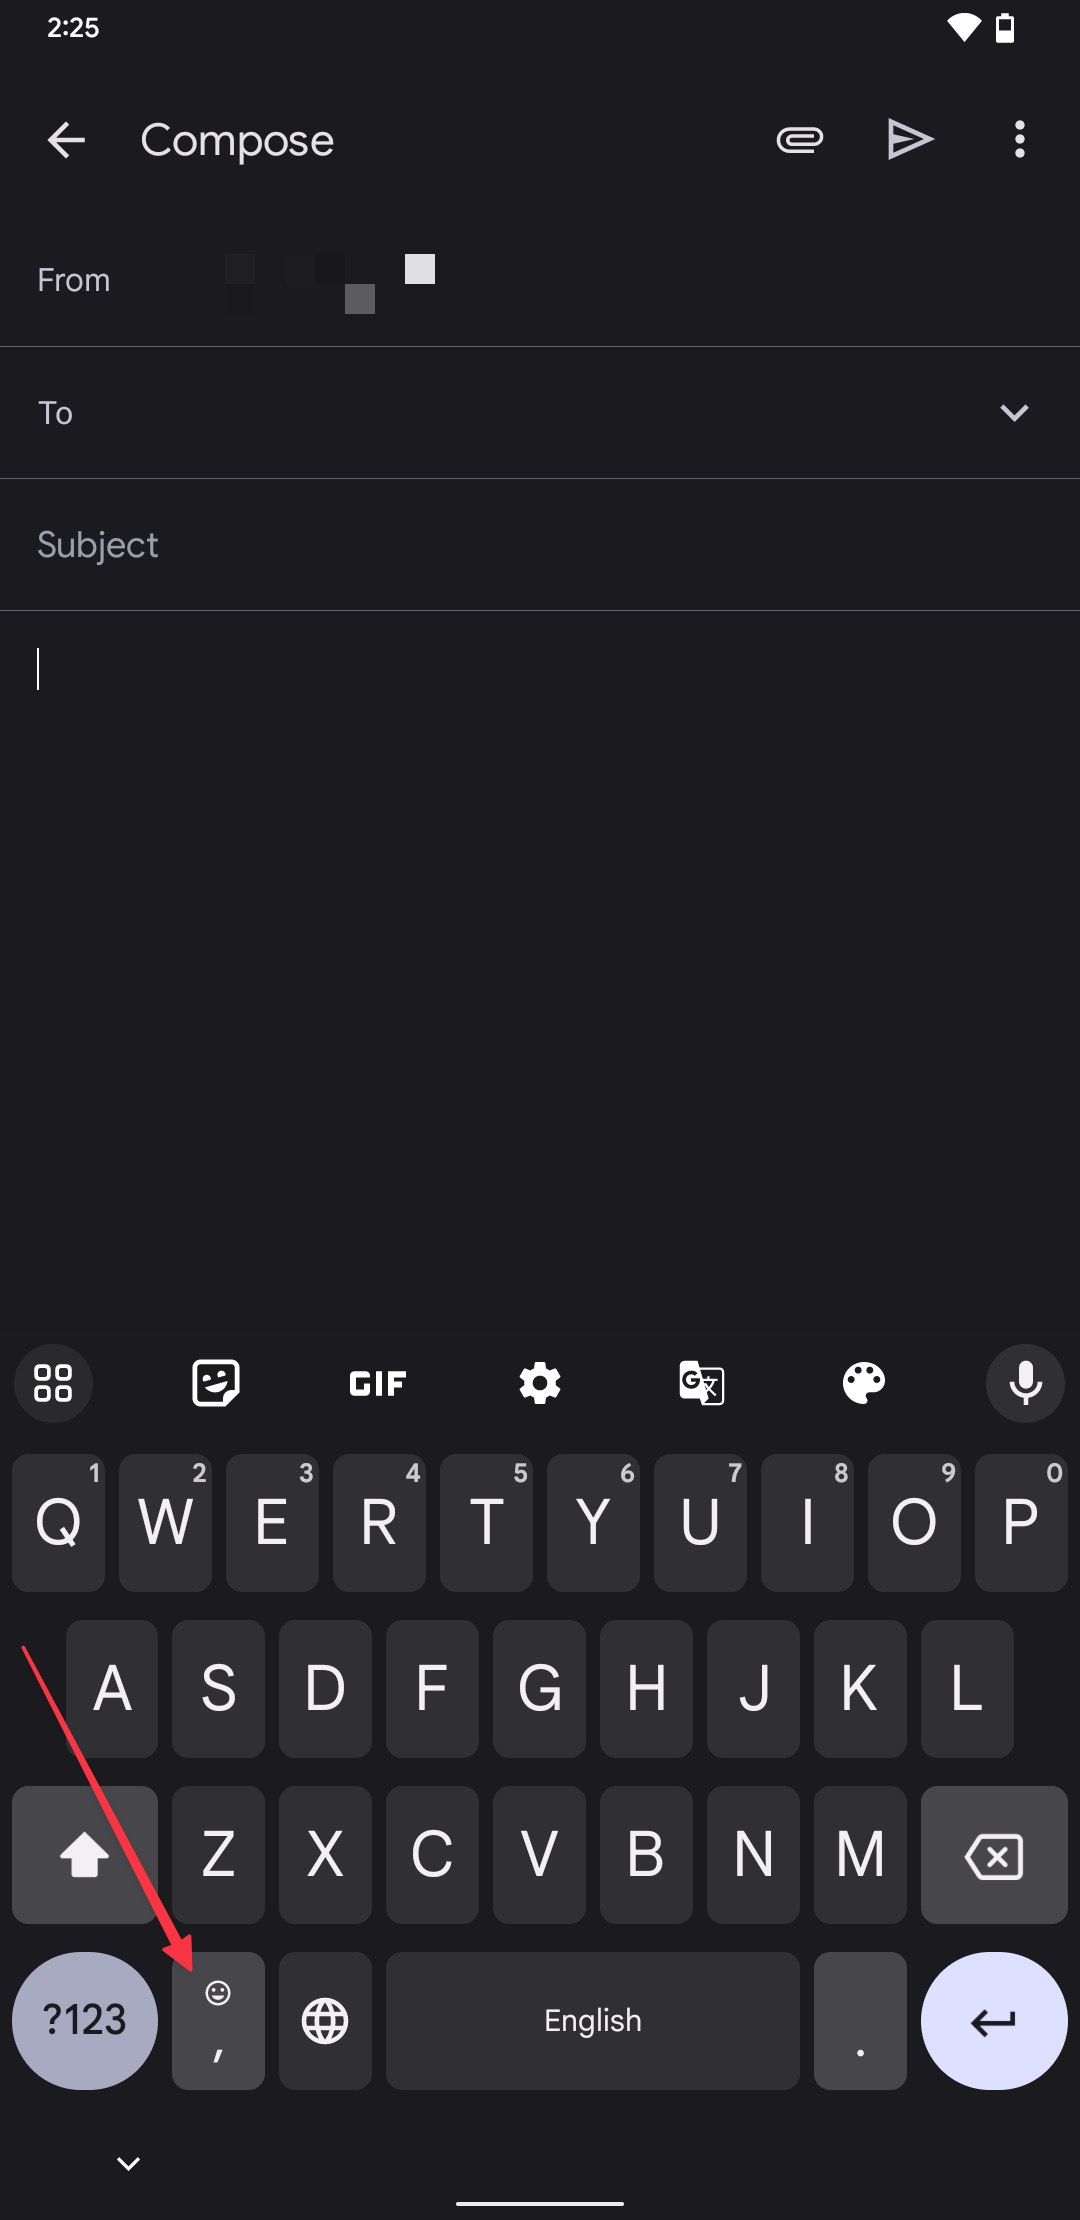 Captura de tela do Gboard mostrando o botão de emoji